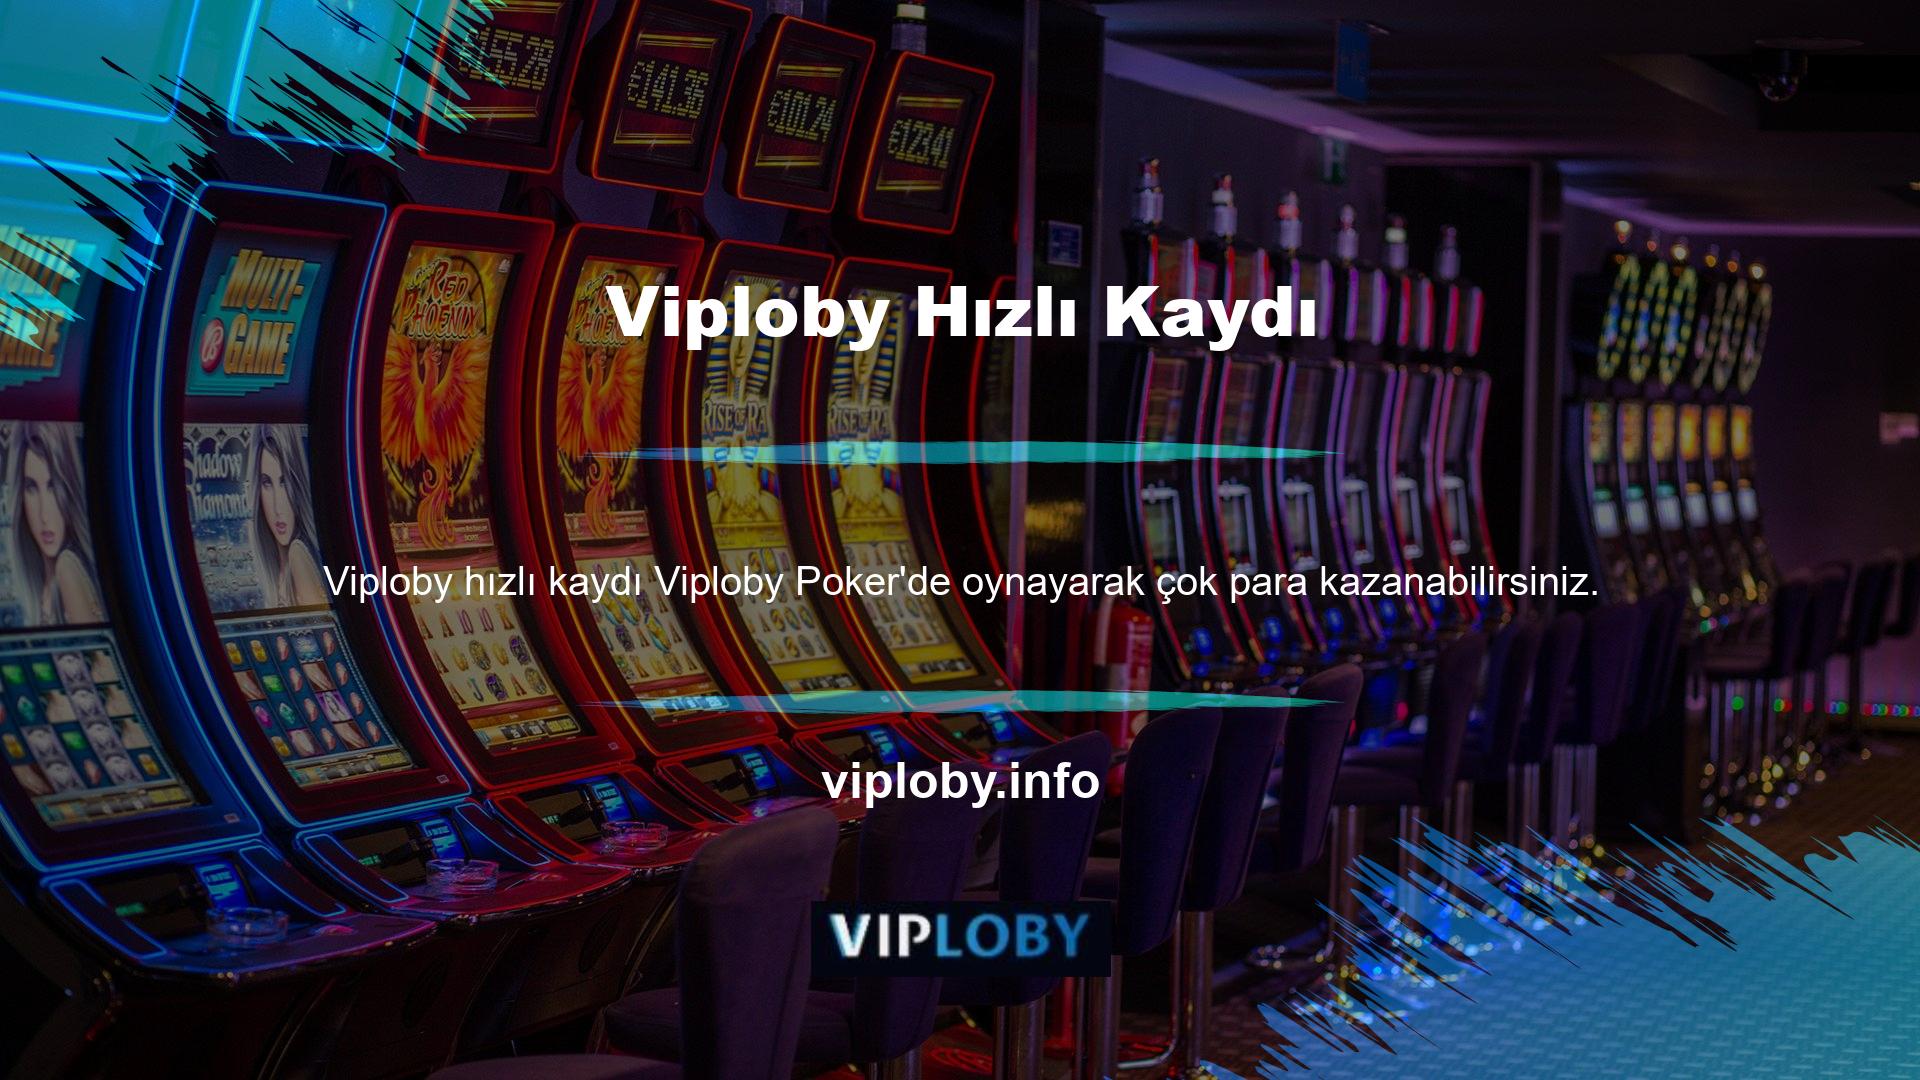 Ancak Viploby, dünyanın en iyi ve en yüksek puan alan casino şirketidir